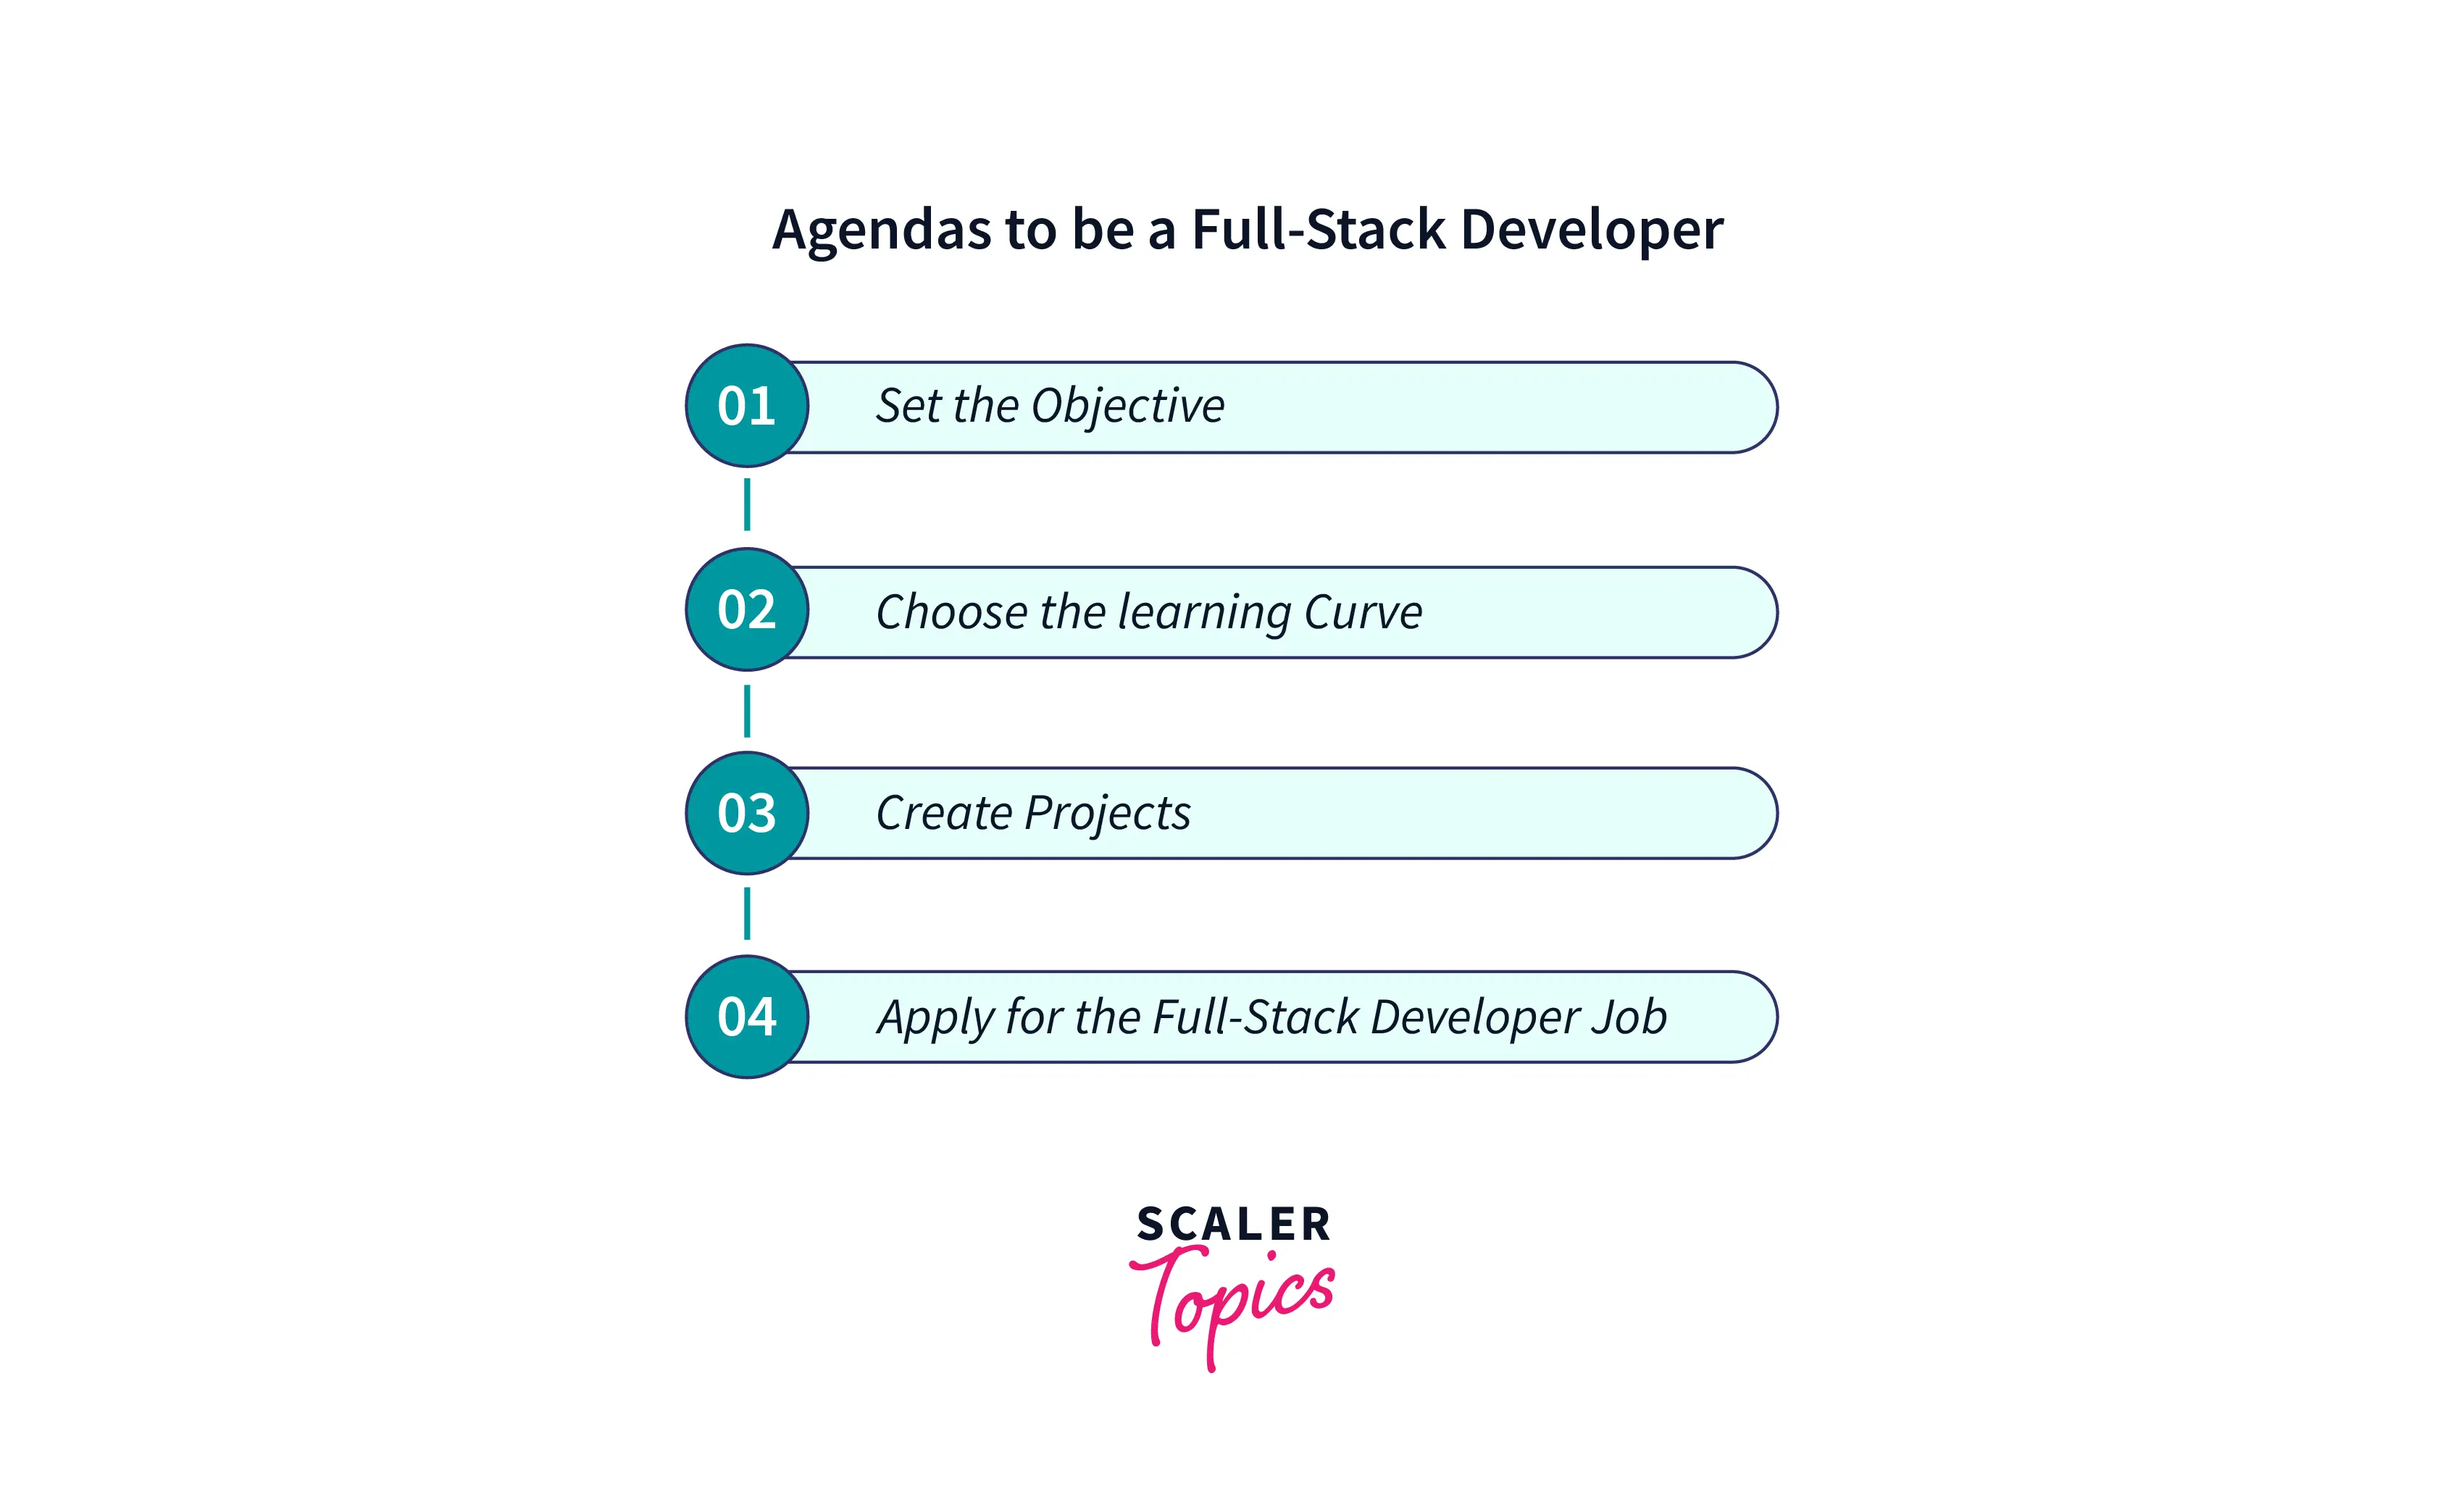 Agenda of full stack developer